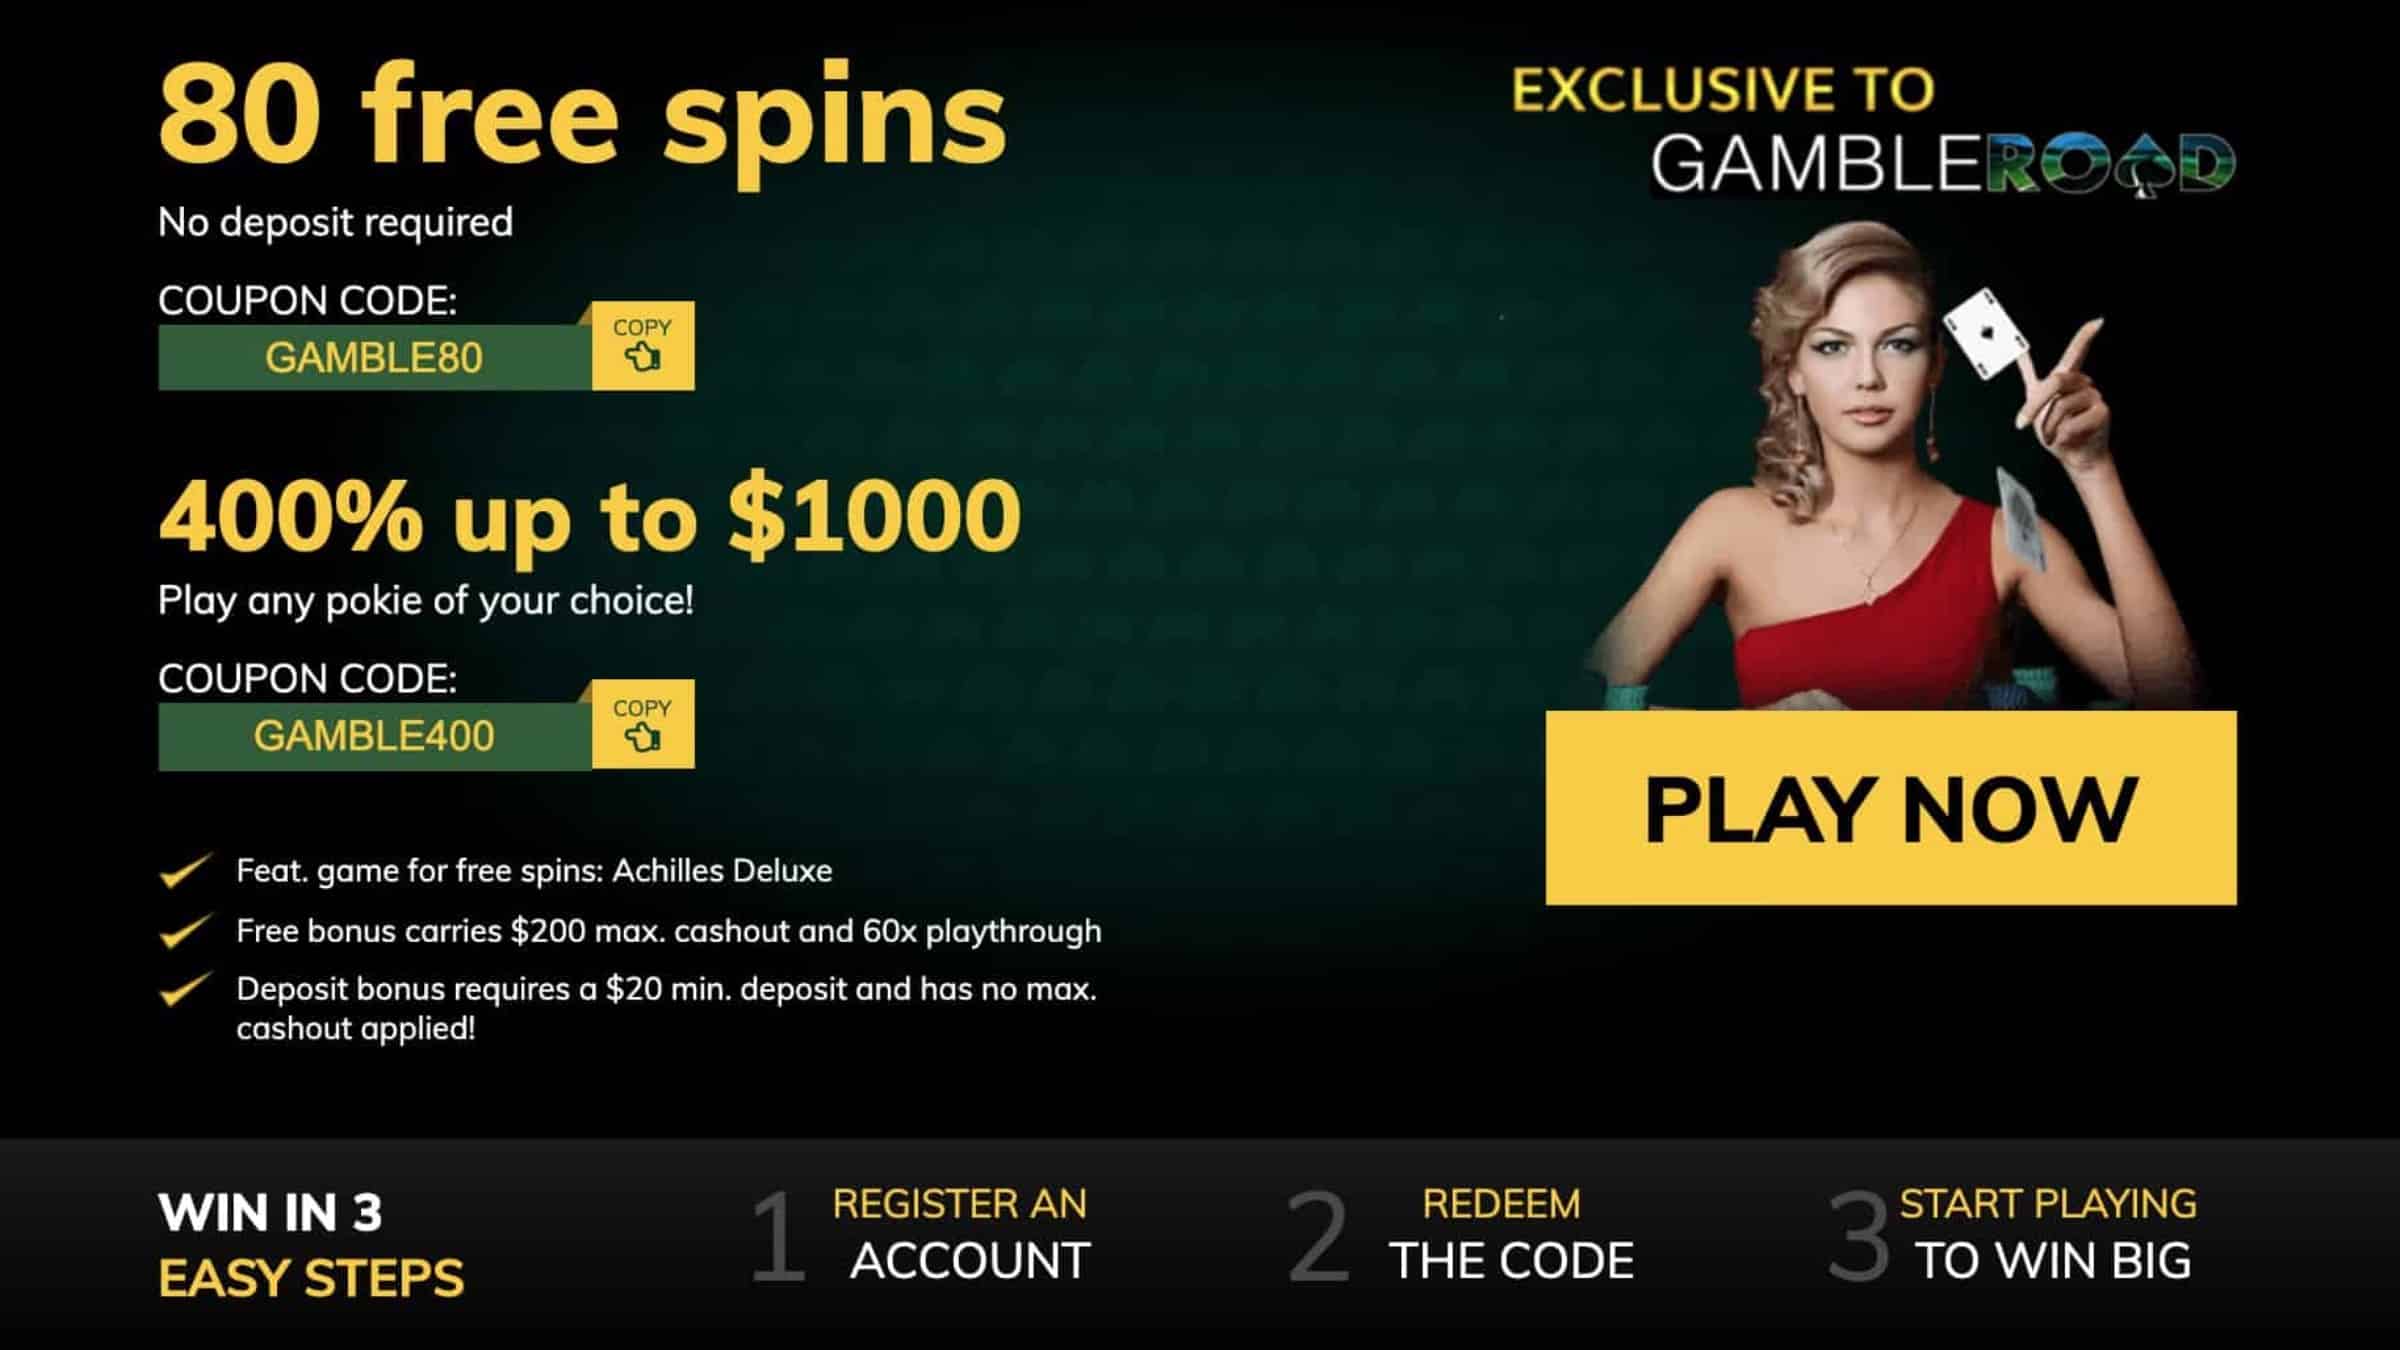 21 Dukes Casino Bonus : get 25 Free Spins + $7.5K on Deposit